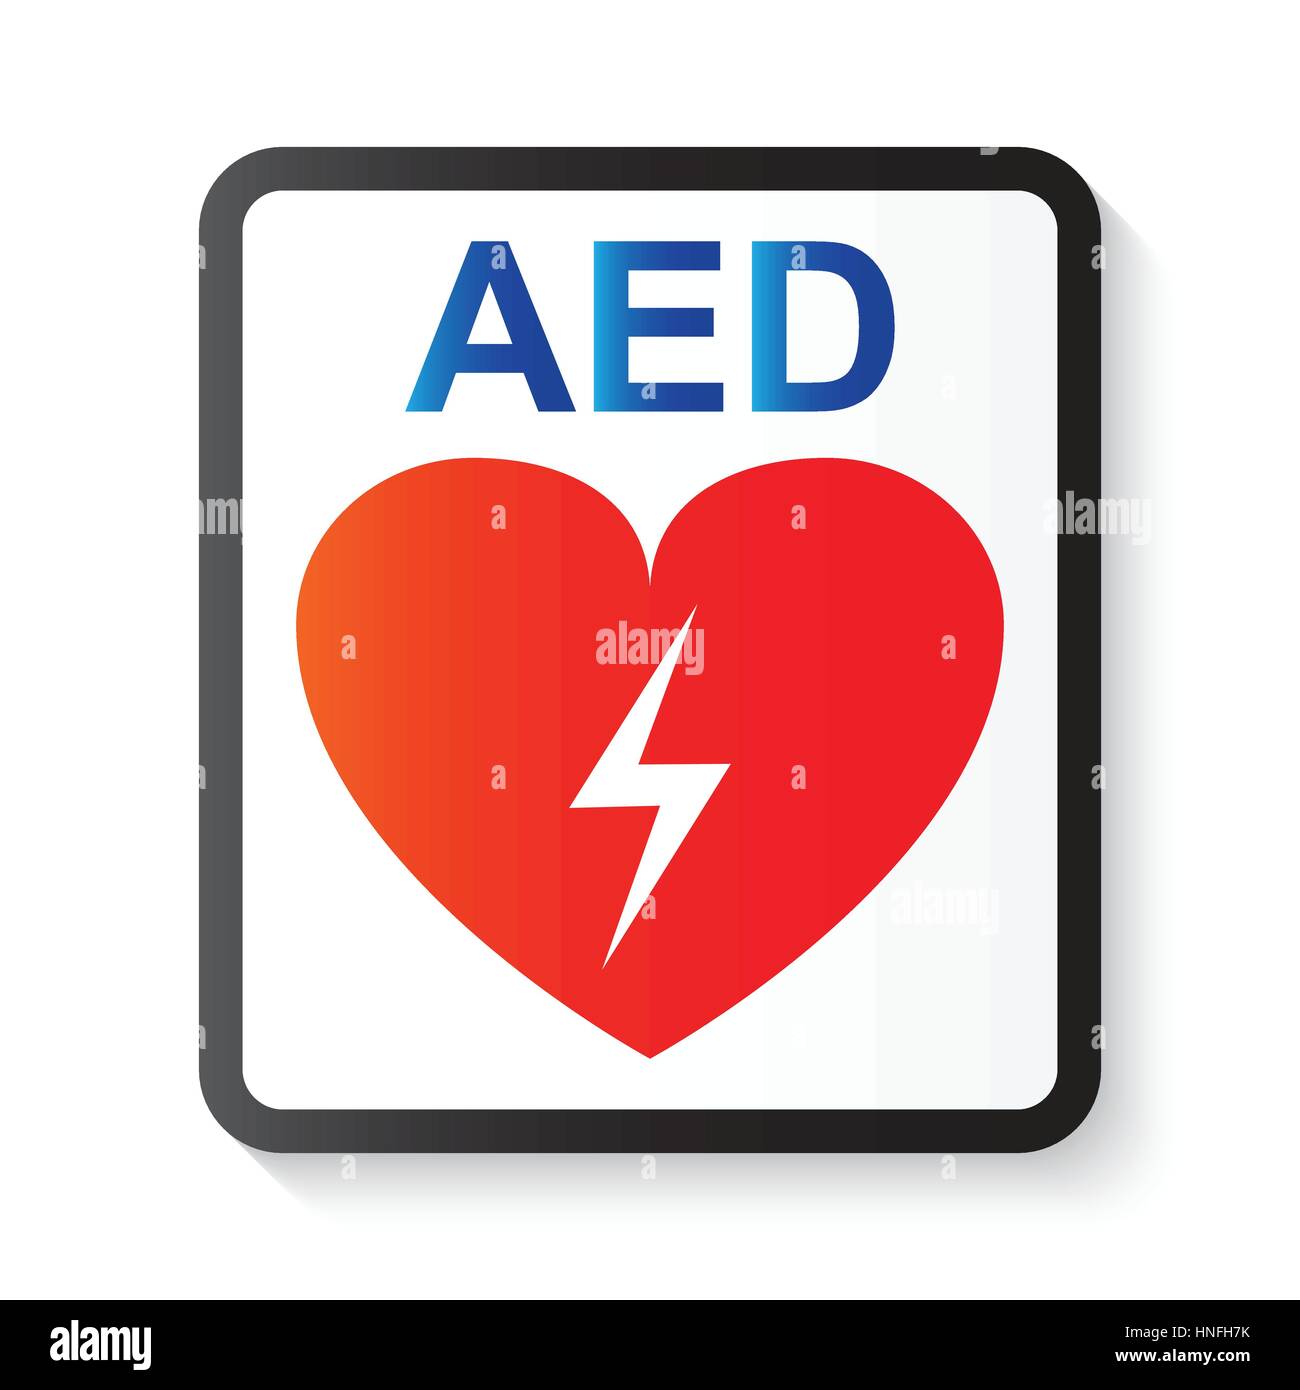 Défibrillateur automatisé externe ( DAE ) , cœur et thunderbolt ( image de base et de réanimation cardiaque avancée ) Illustration de Vecteur